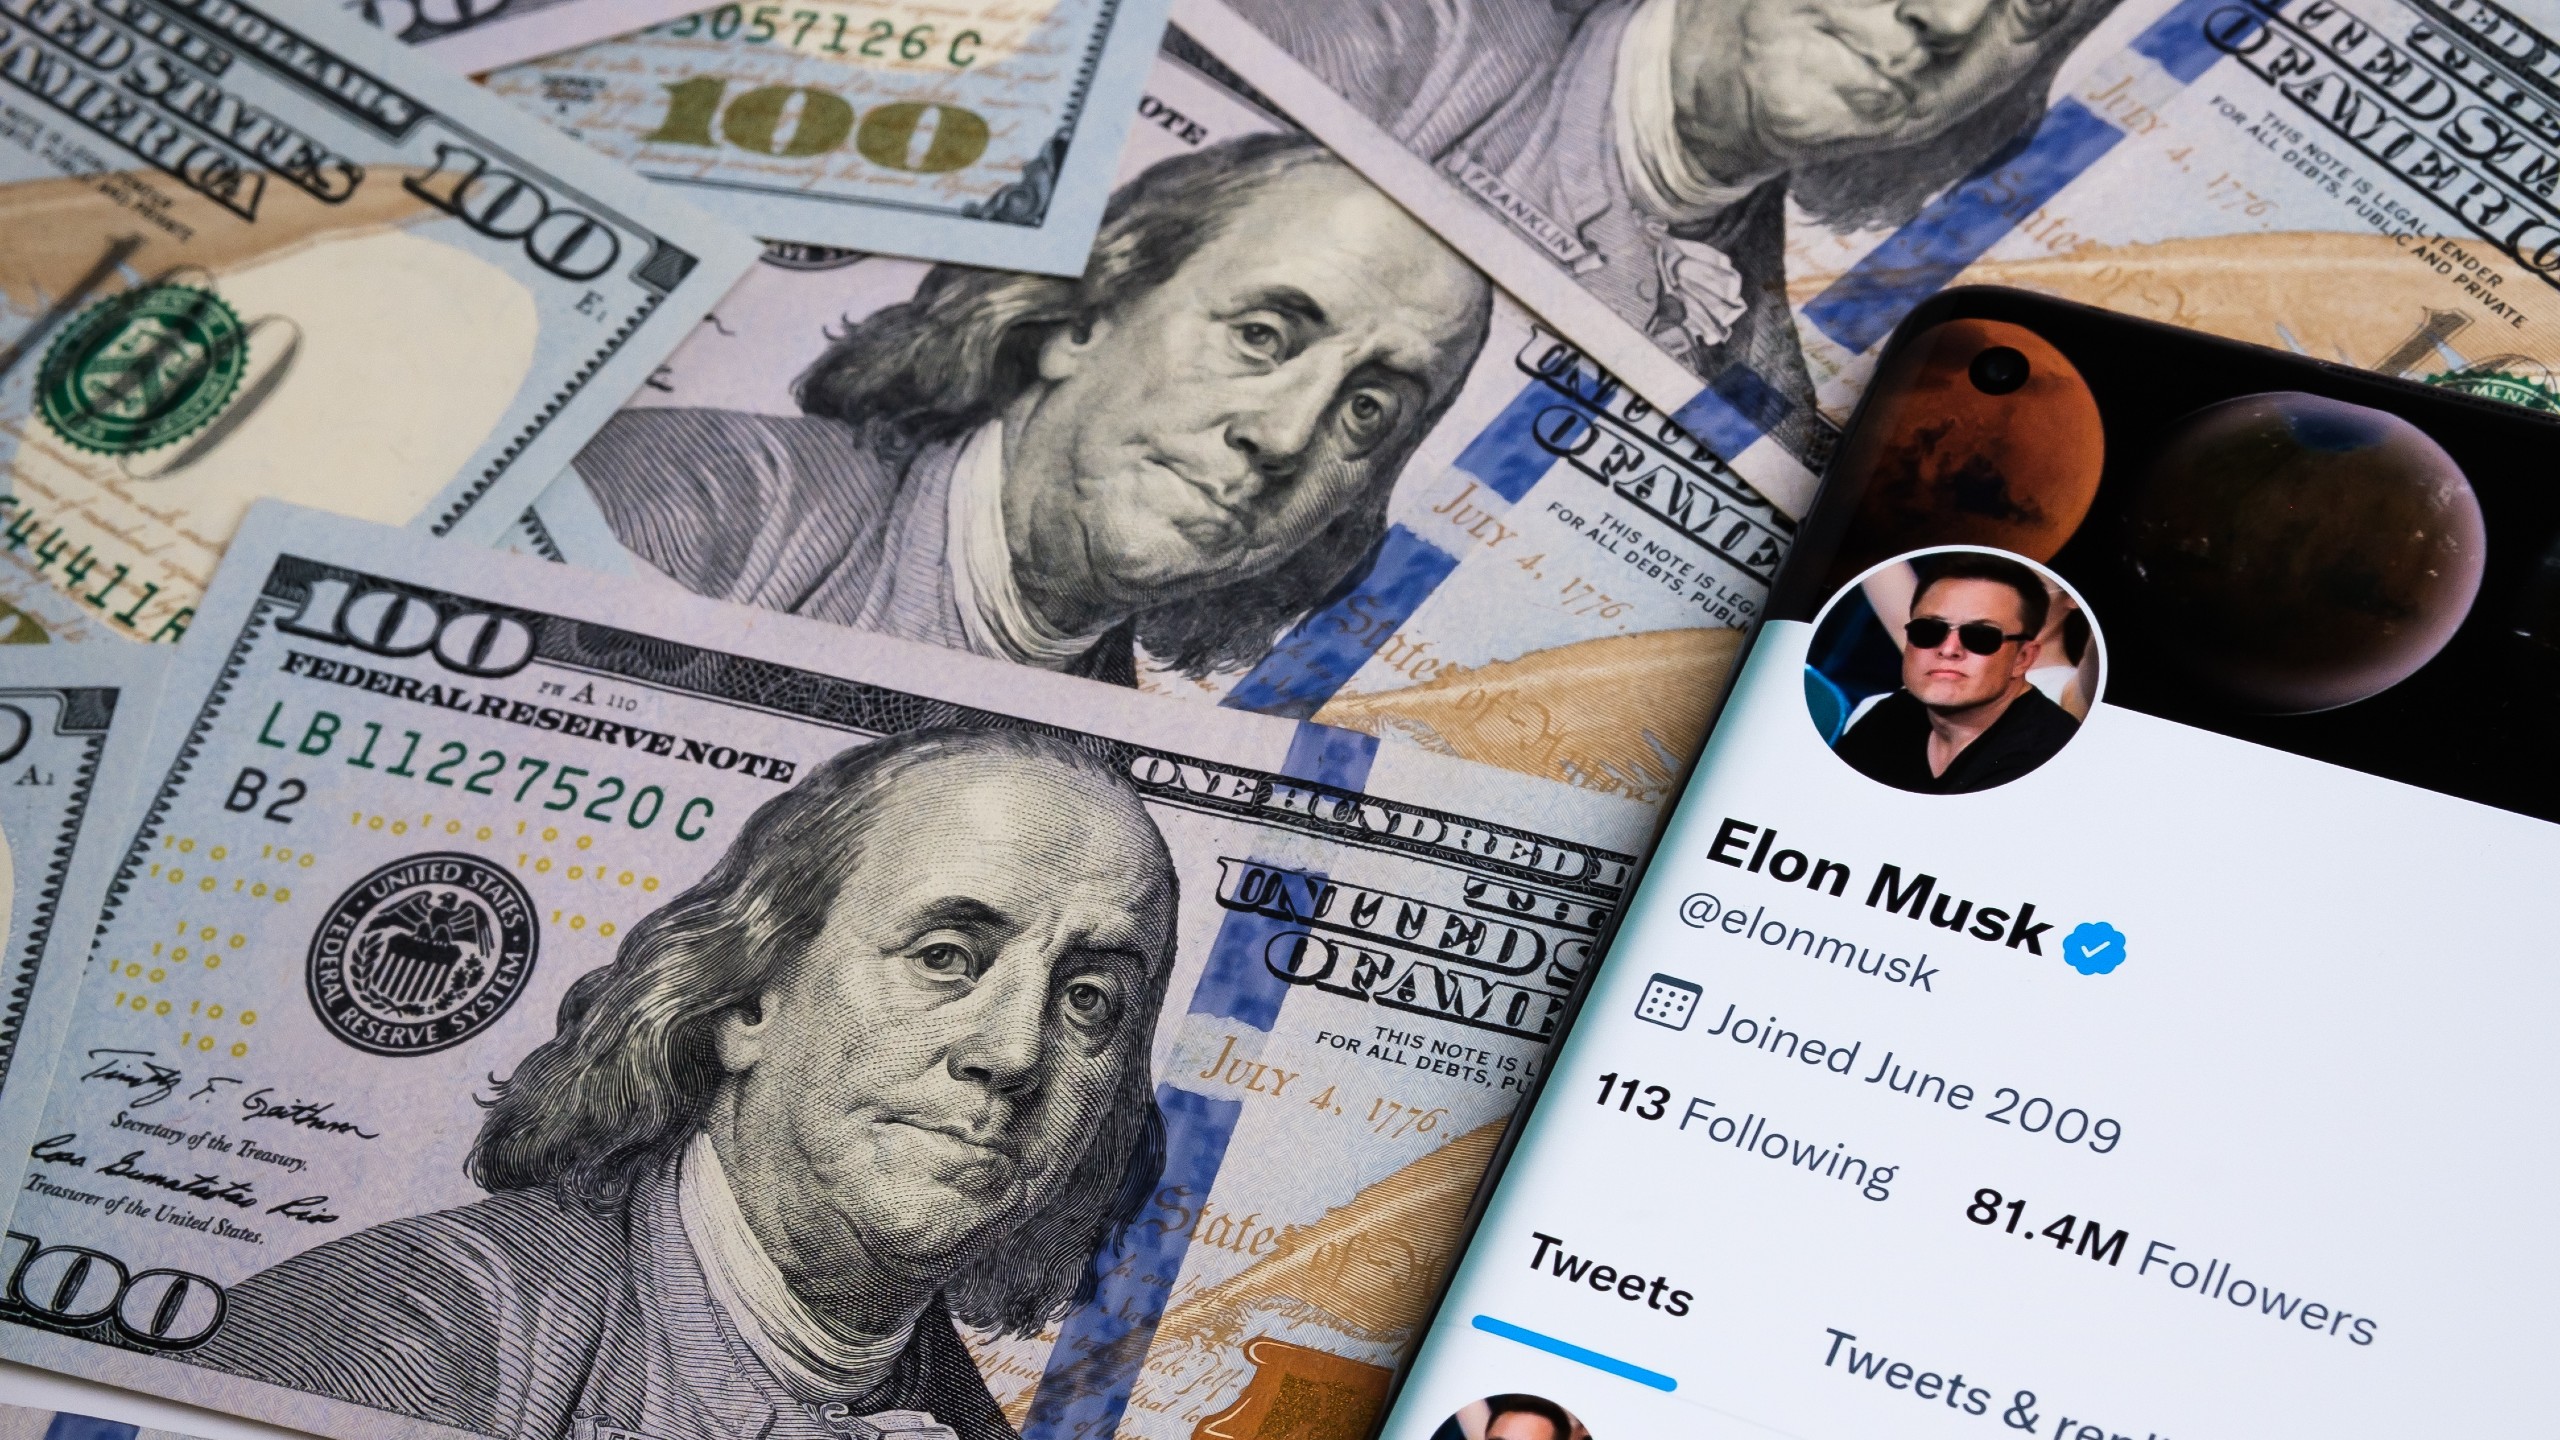 ٹویٹر اب مسک کی 44 بلین ڈالر کی خریداری کی قیمت کے صرف ایک تہائی کے قابل ہے۔